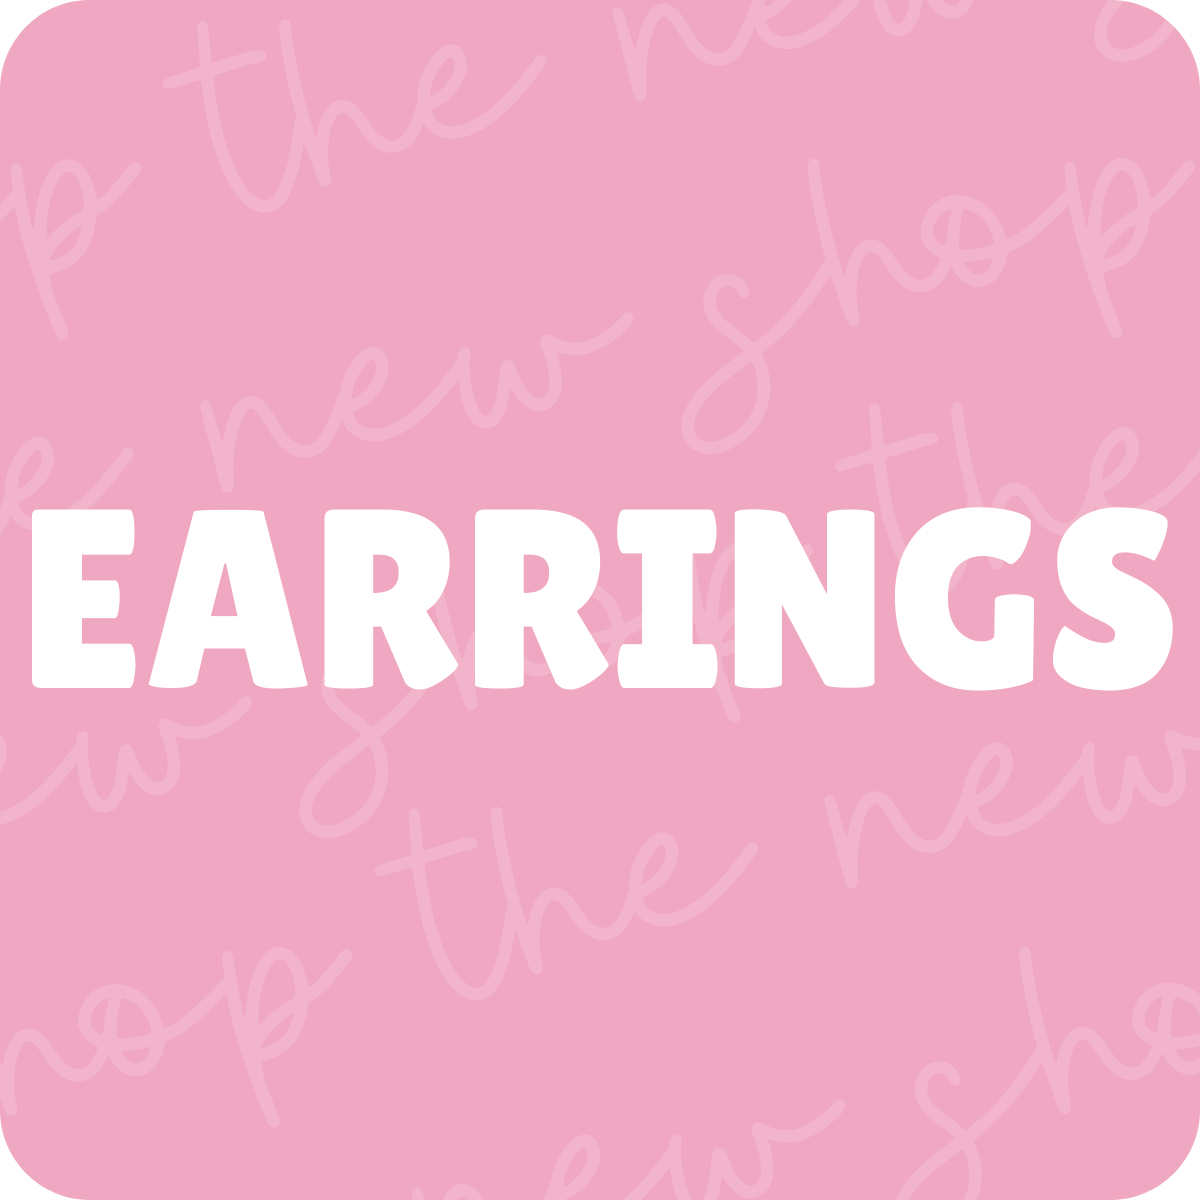 All Earrings